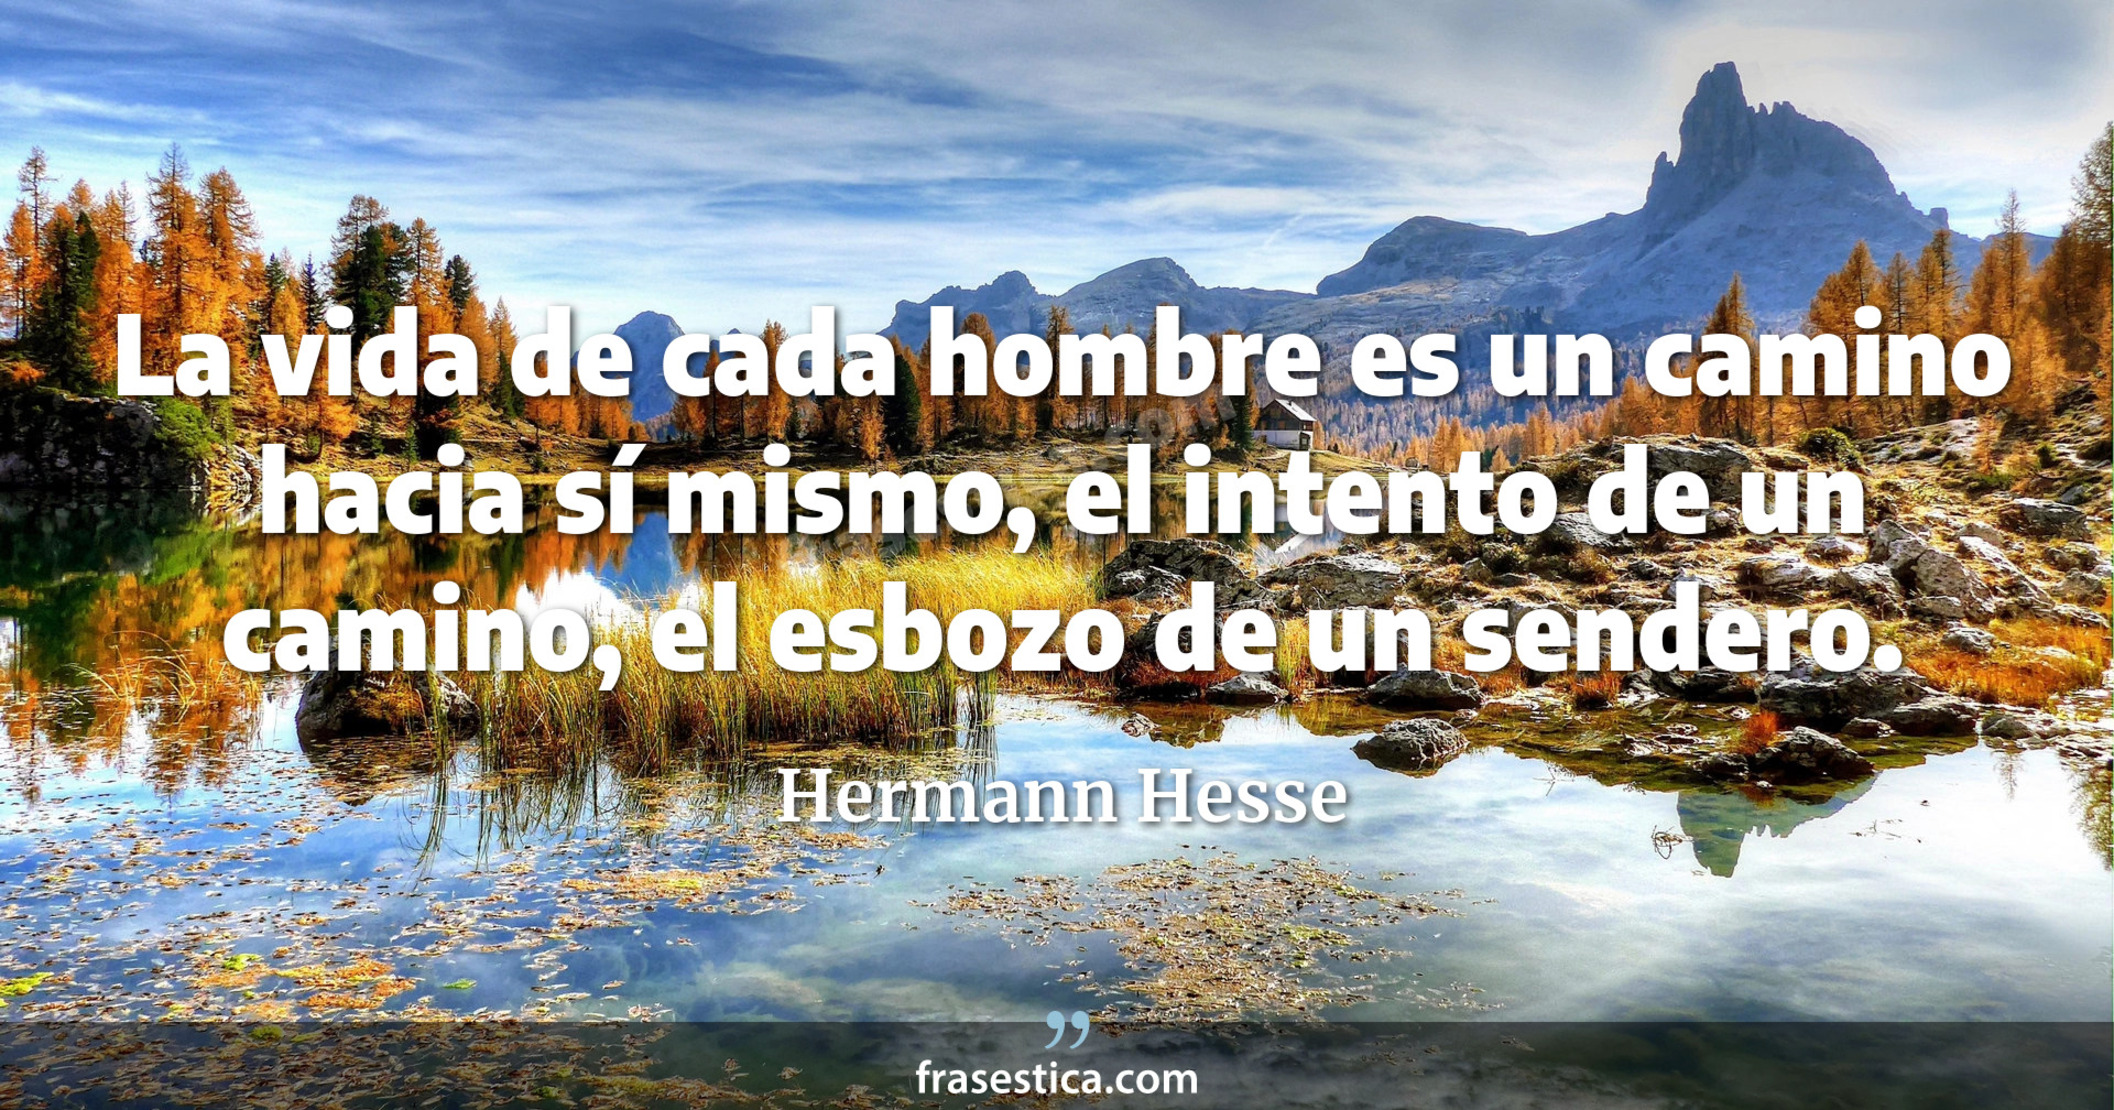 La vida de cada hombre es un camino hacia sí mismo, el intento de un camino, el esbozo de un sendero. - Hermann Hesse